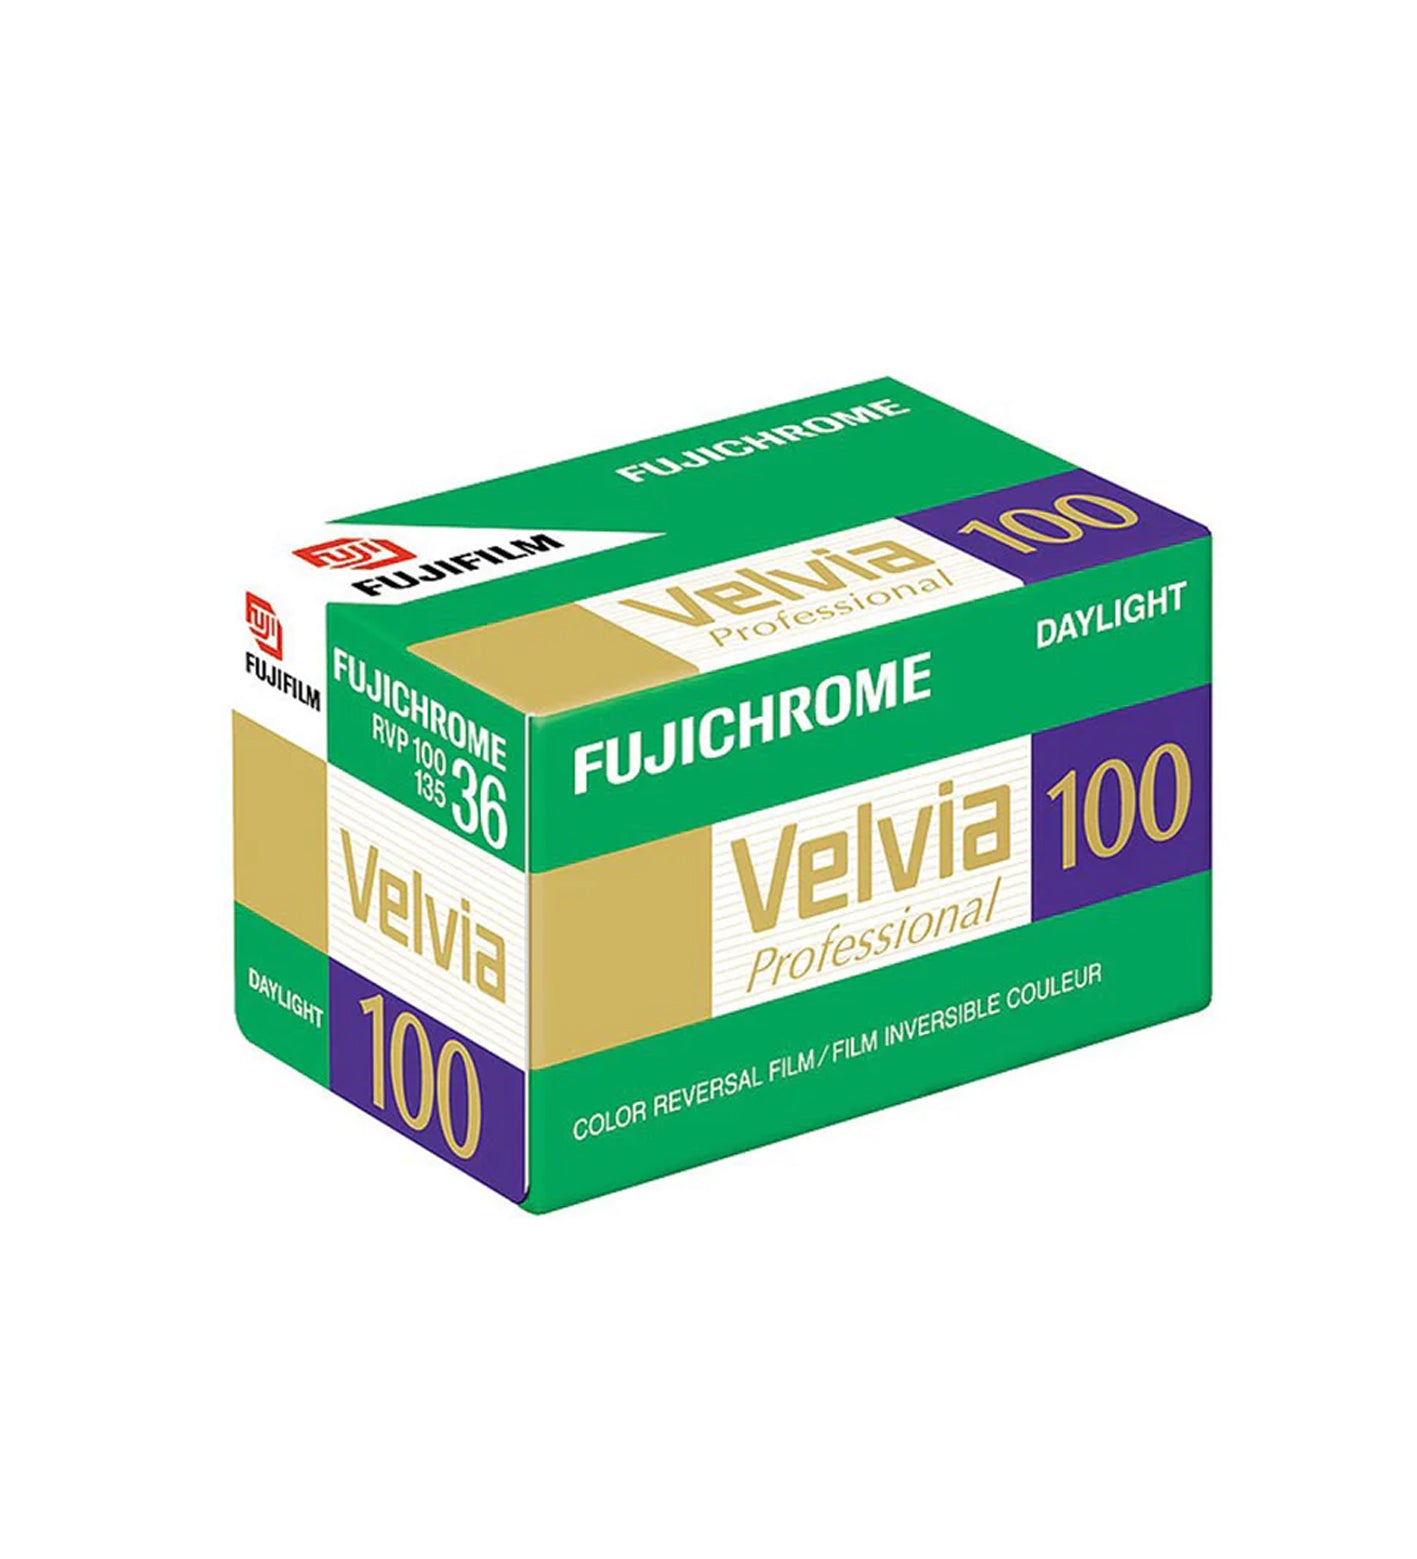 Fujifilm Velvia 100 35mm Film 36 Exposures (£21.99 incl VAT) – TPG 